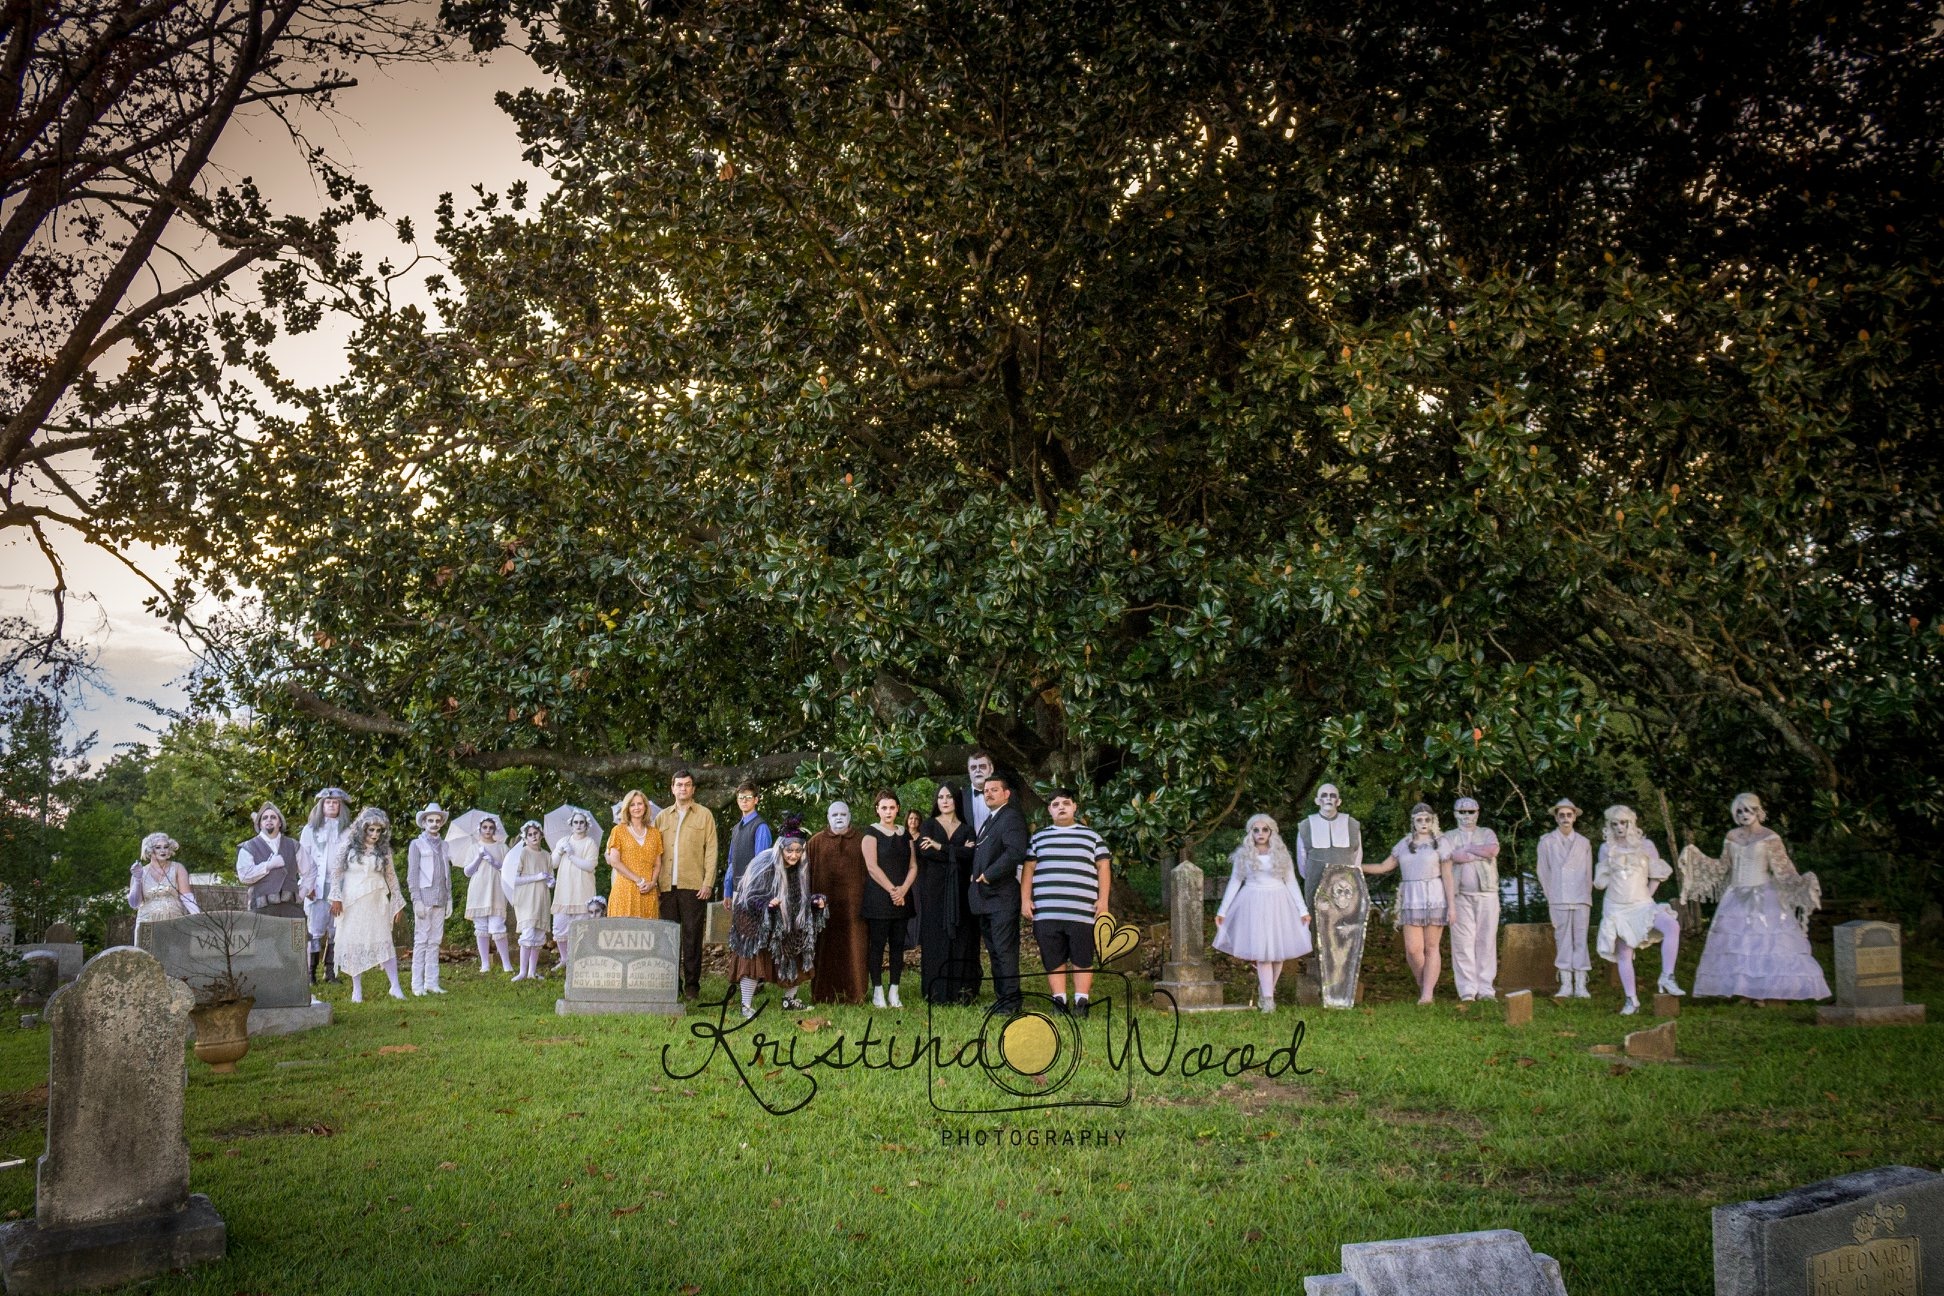 Trussville cemetery photo shoot raises curiosity